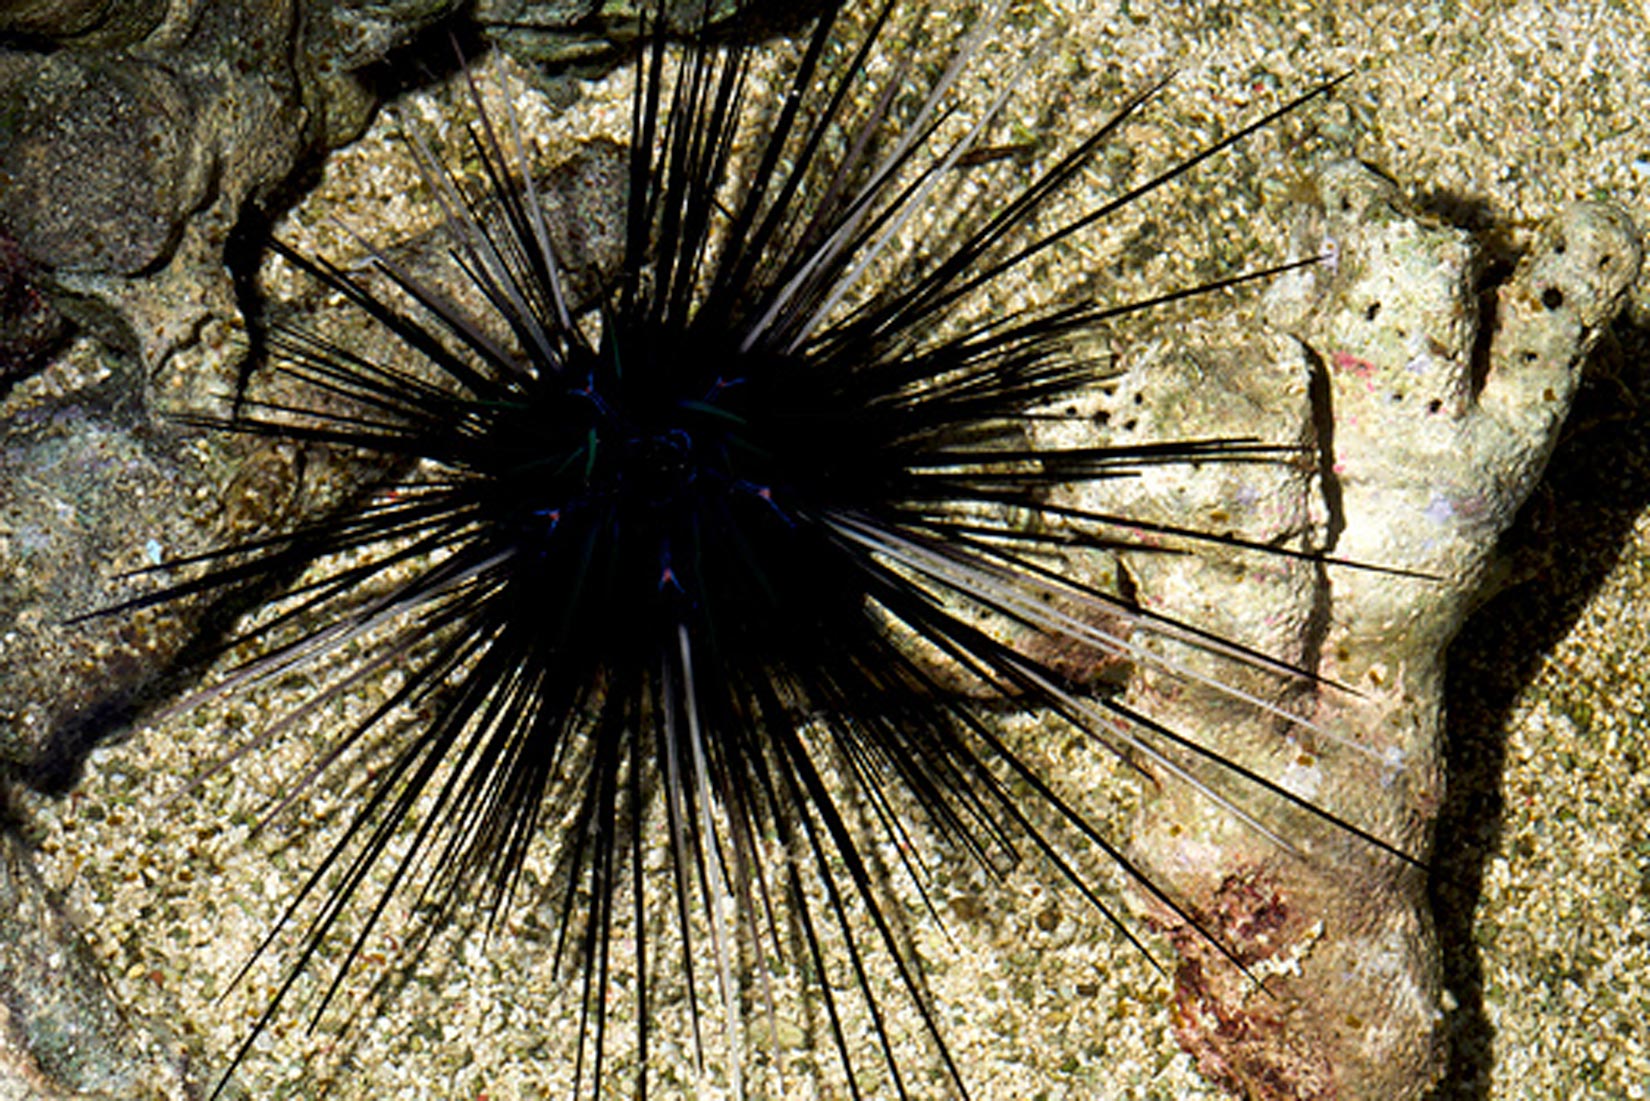 Slika pokazuje morskog ježinca na stjenovitom morskom dnu. Ježinac je okrulog oblika i potpuno je prekriven crnim bodljama koje ga štite od grabežljivaca.